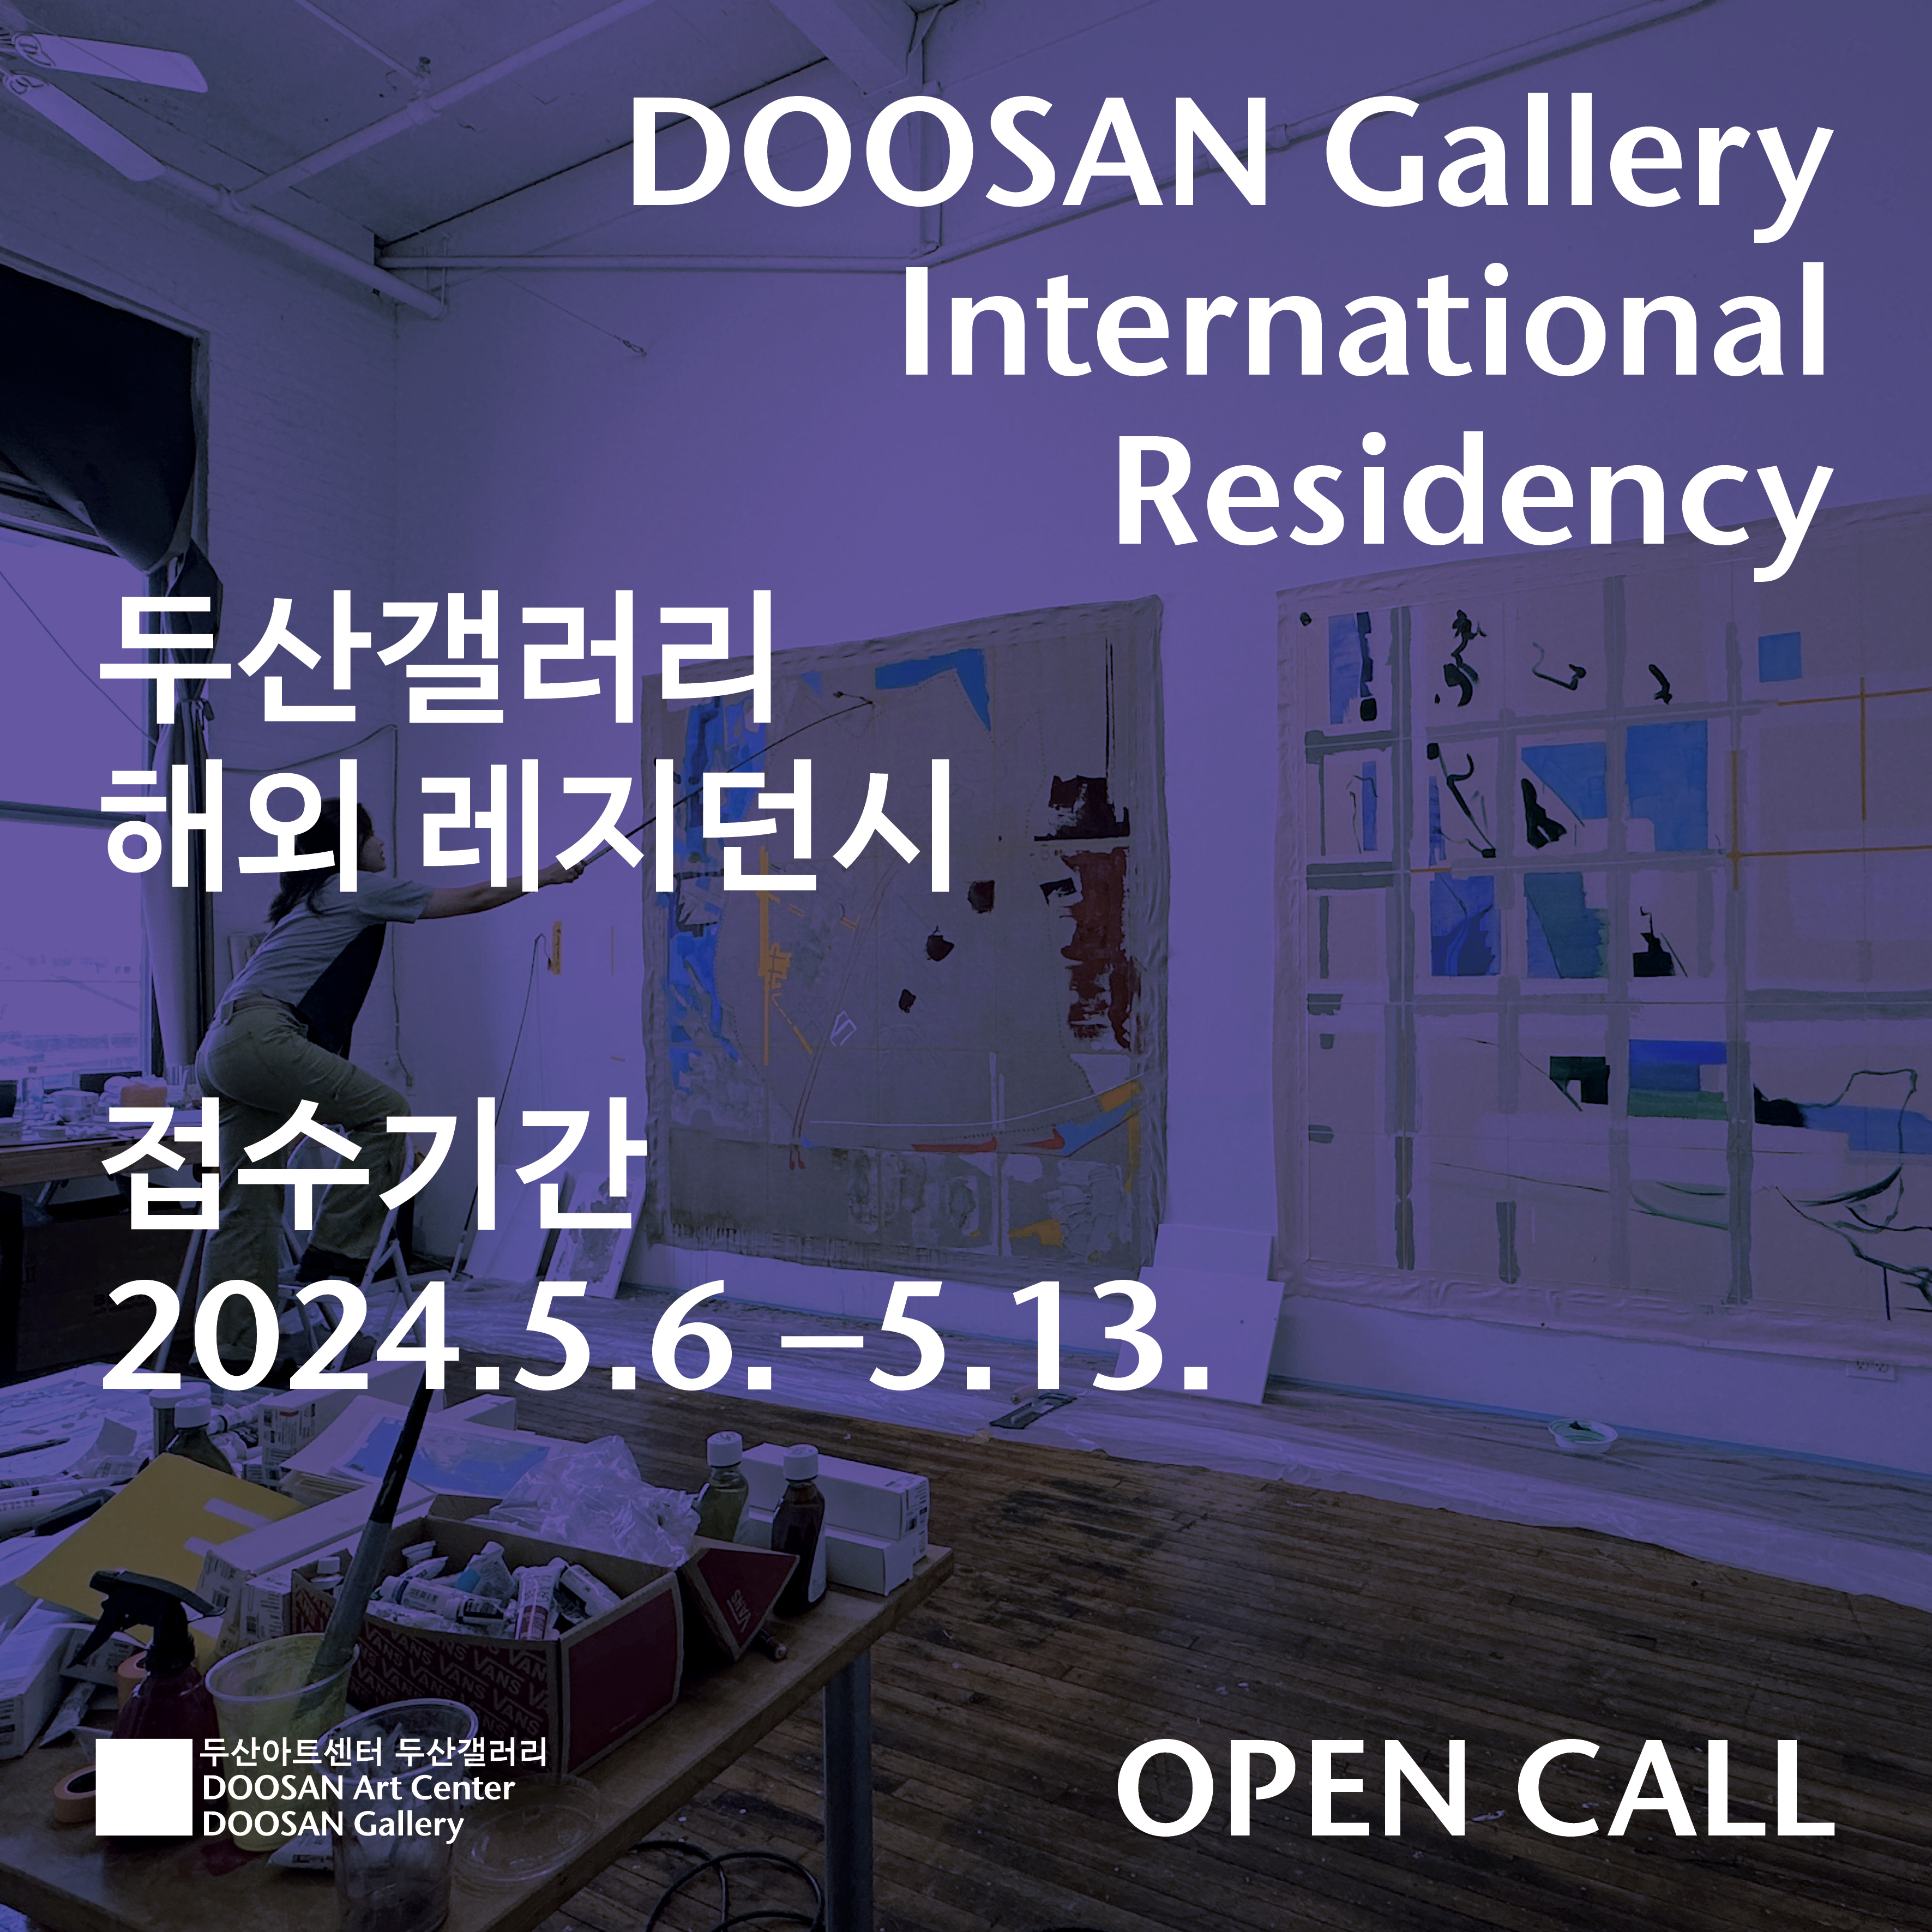 DOOSAN Gallery International Residency